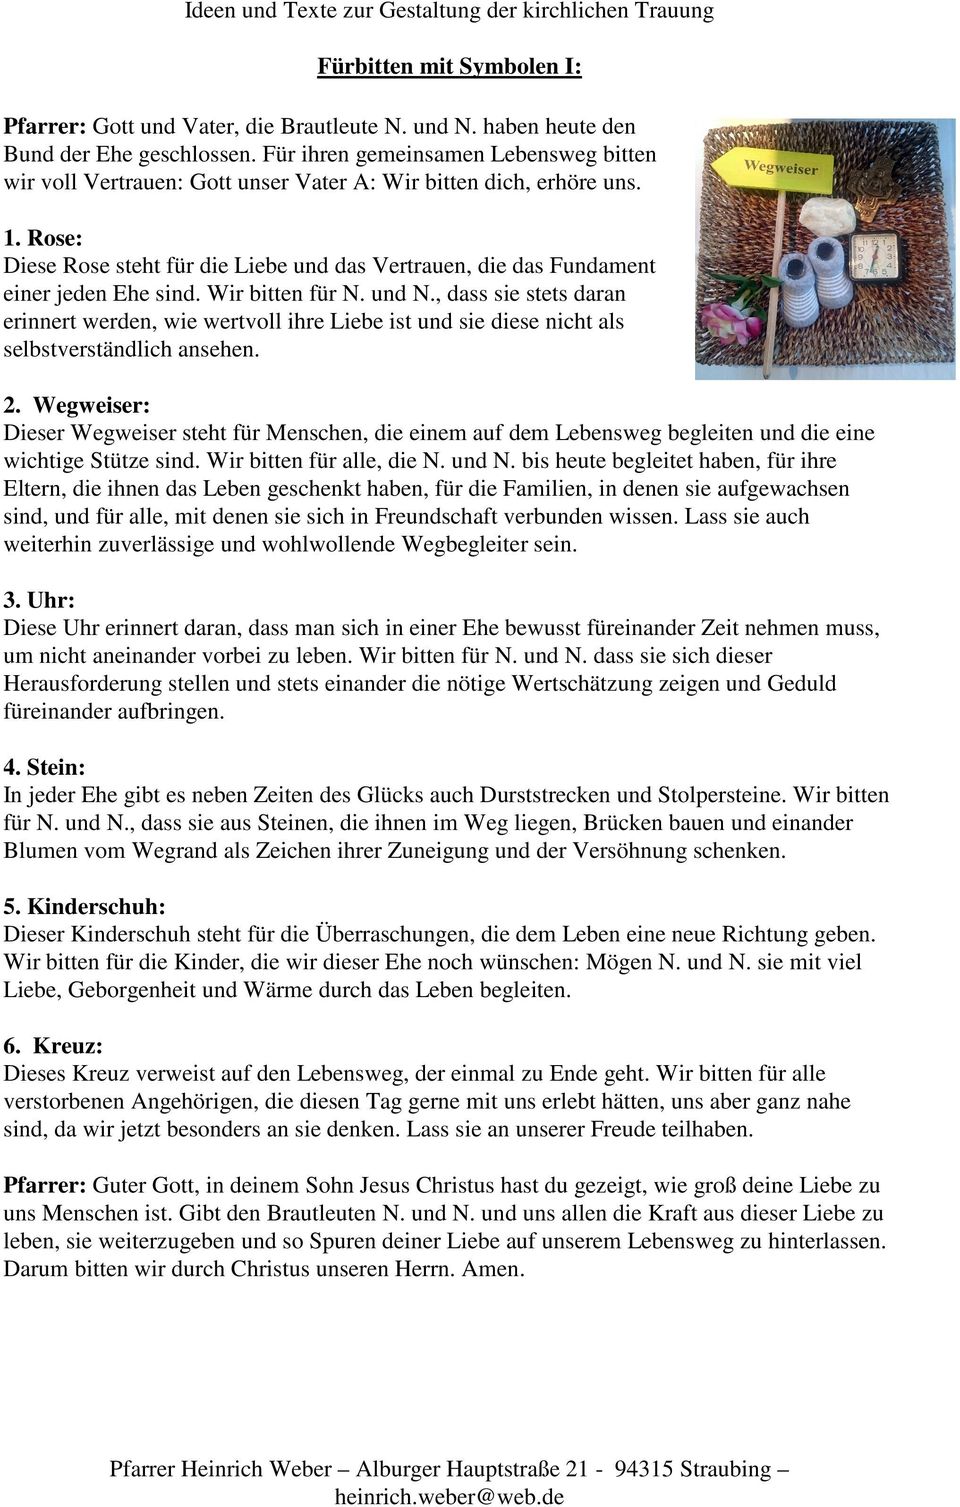 Ideen Und Texte Zur Gestaltung Der Kirchlichen Trauung Furbitten Mit Symbolen I Pdf Free Download